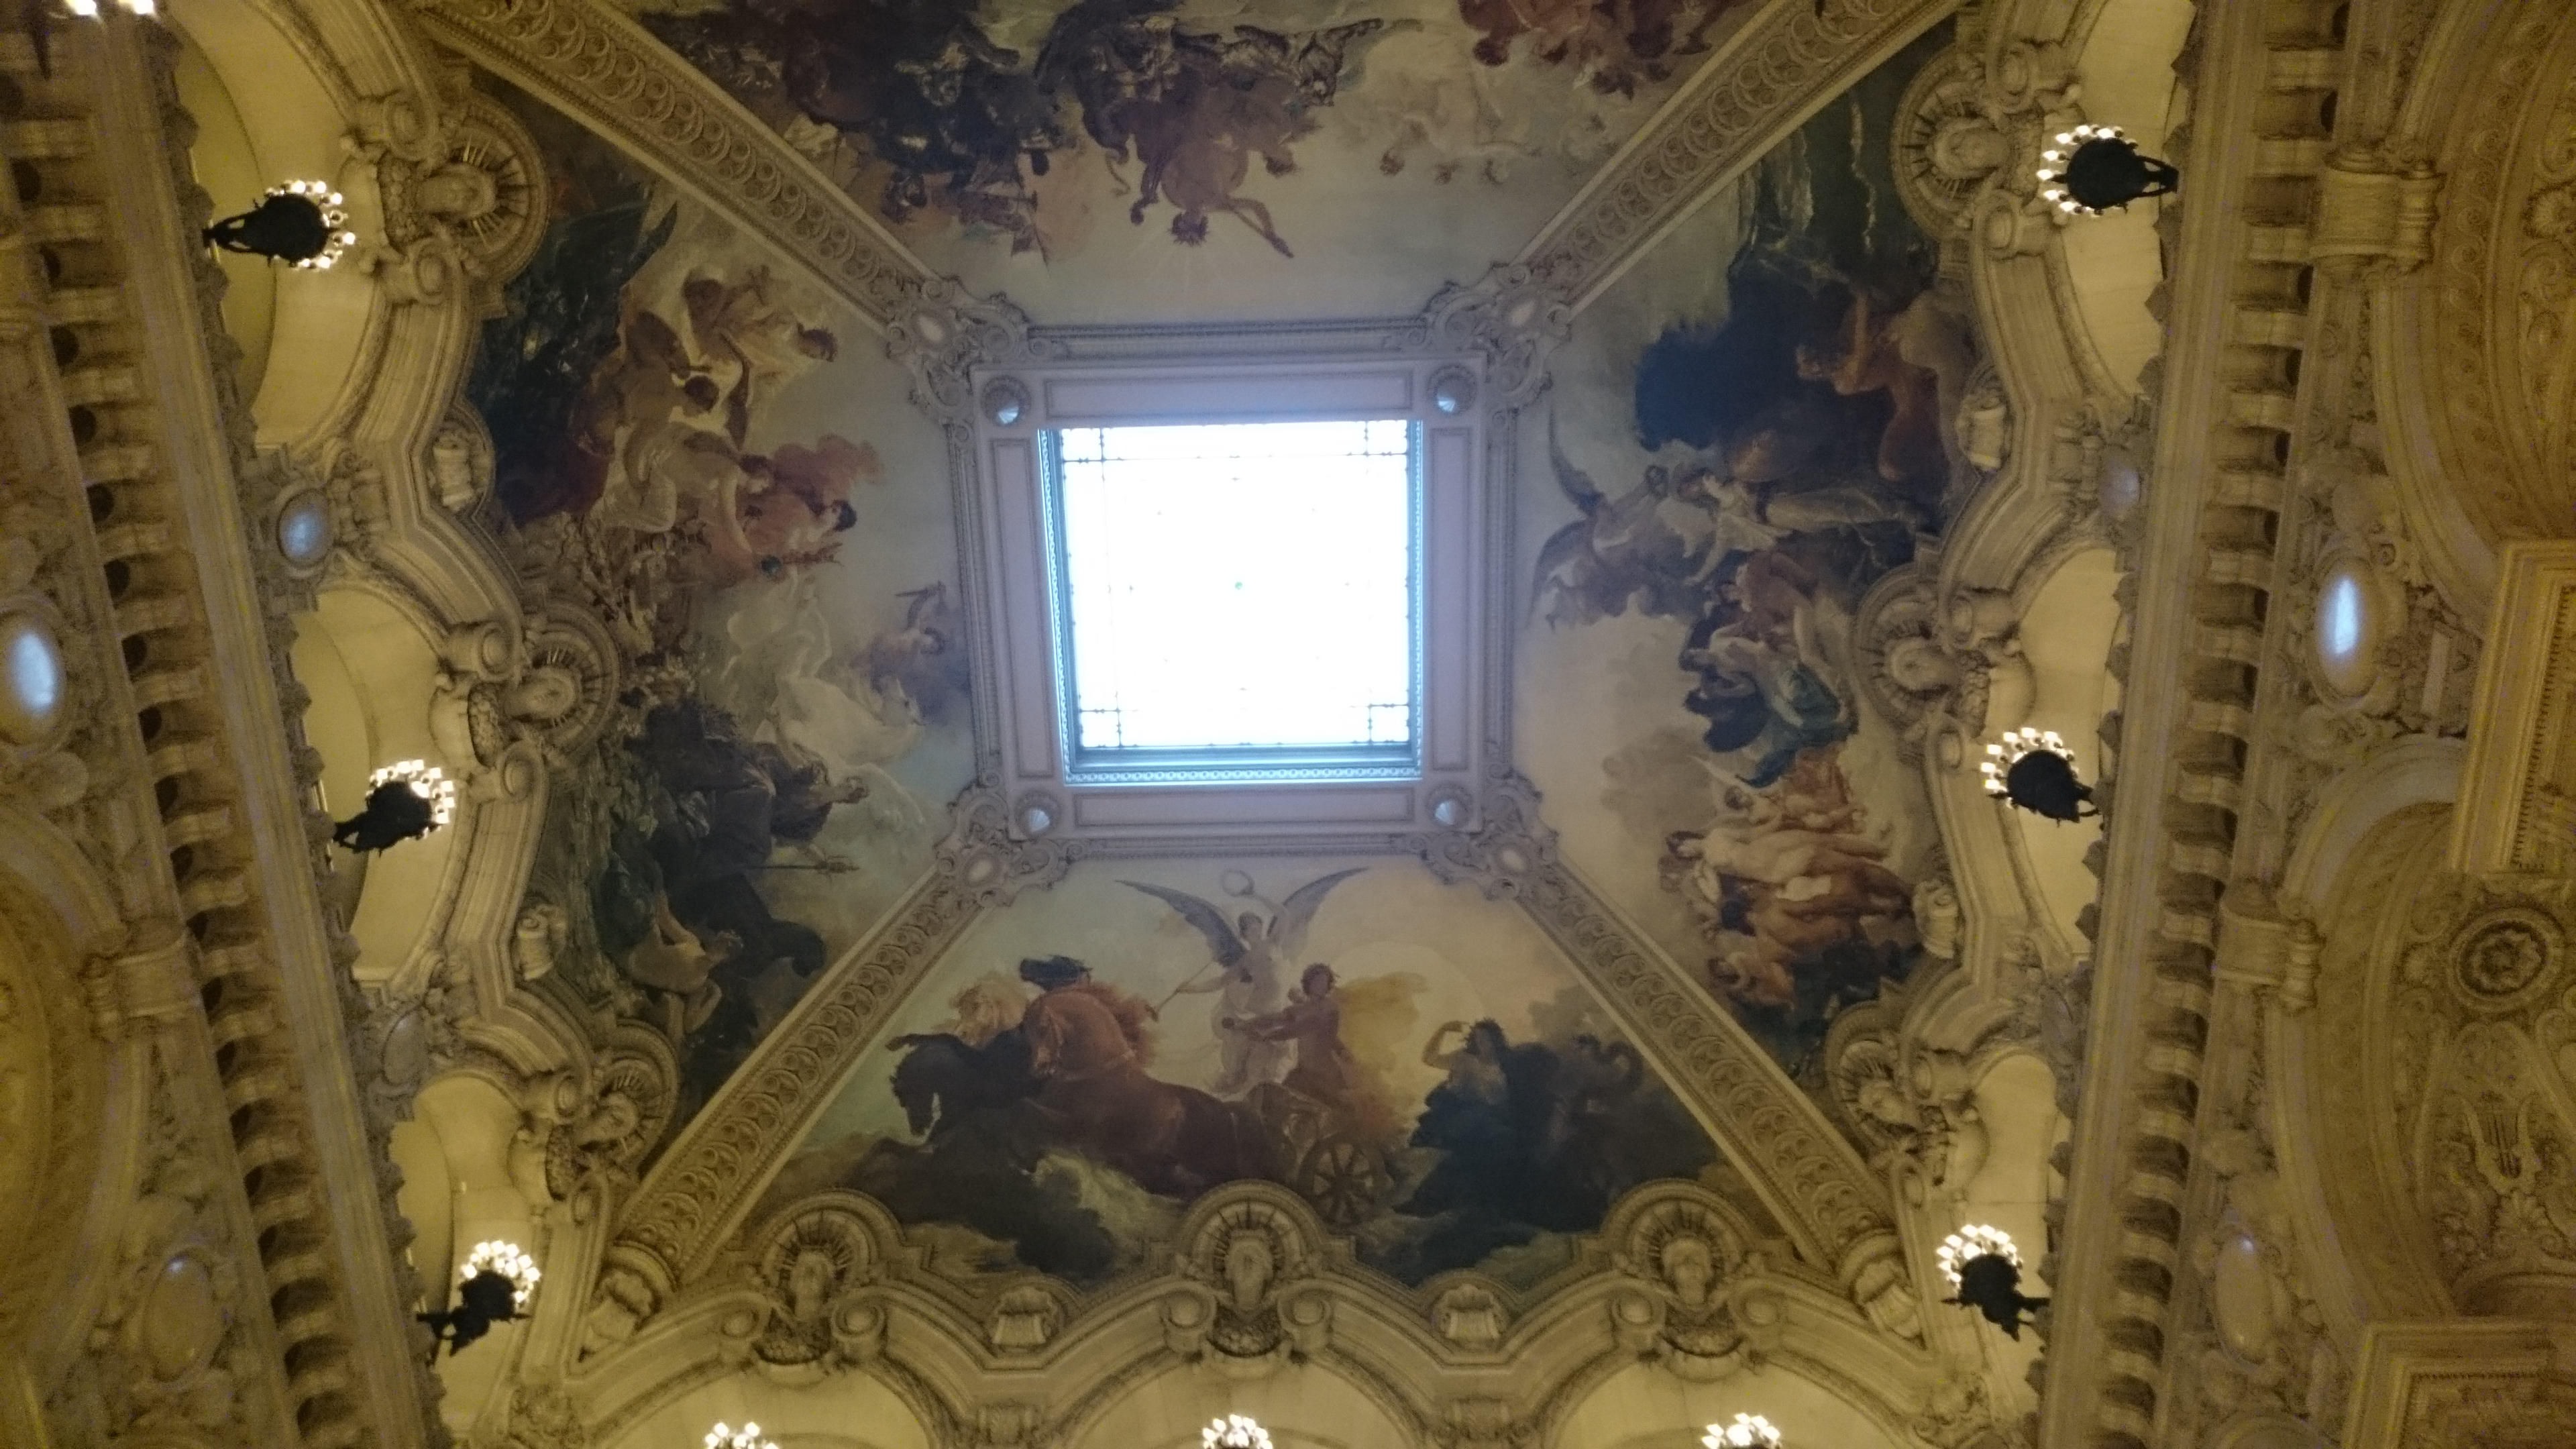 dsc 1009 - Una visita a la Opera de Paris (Palais Garnier)